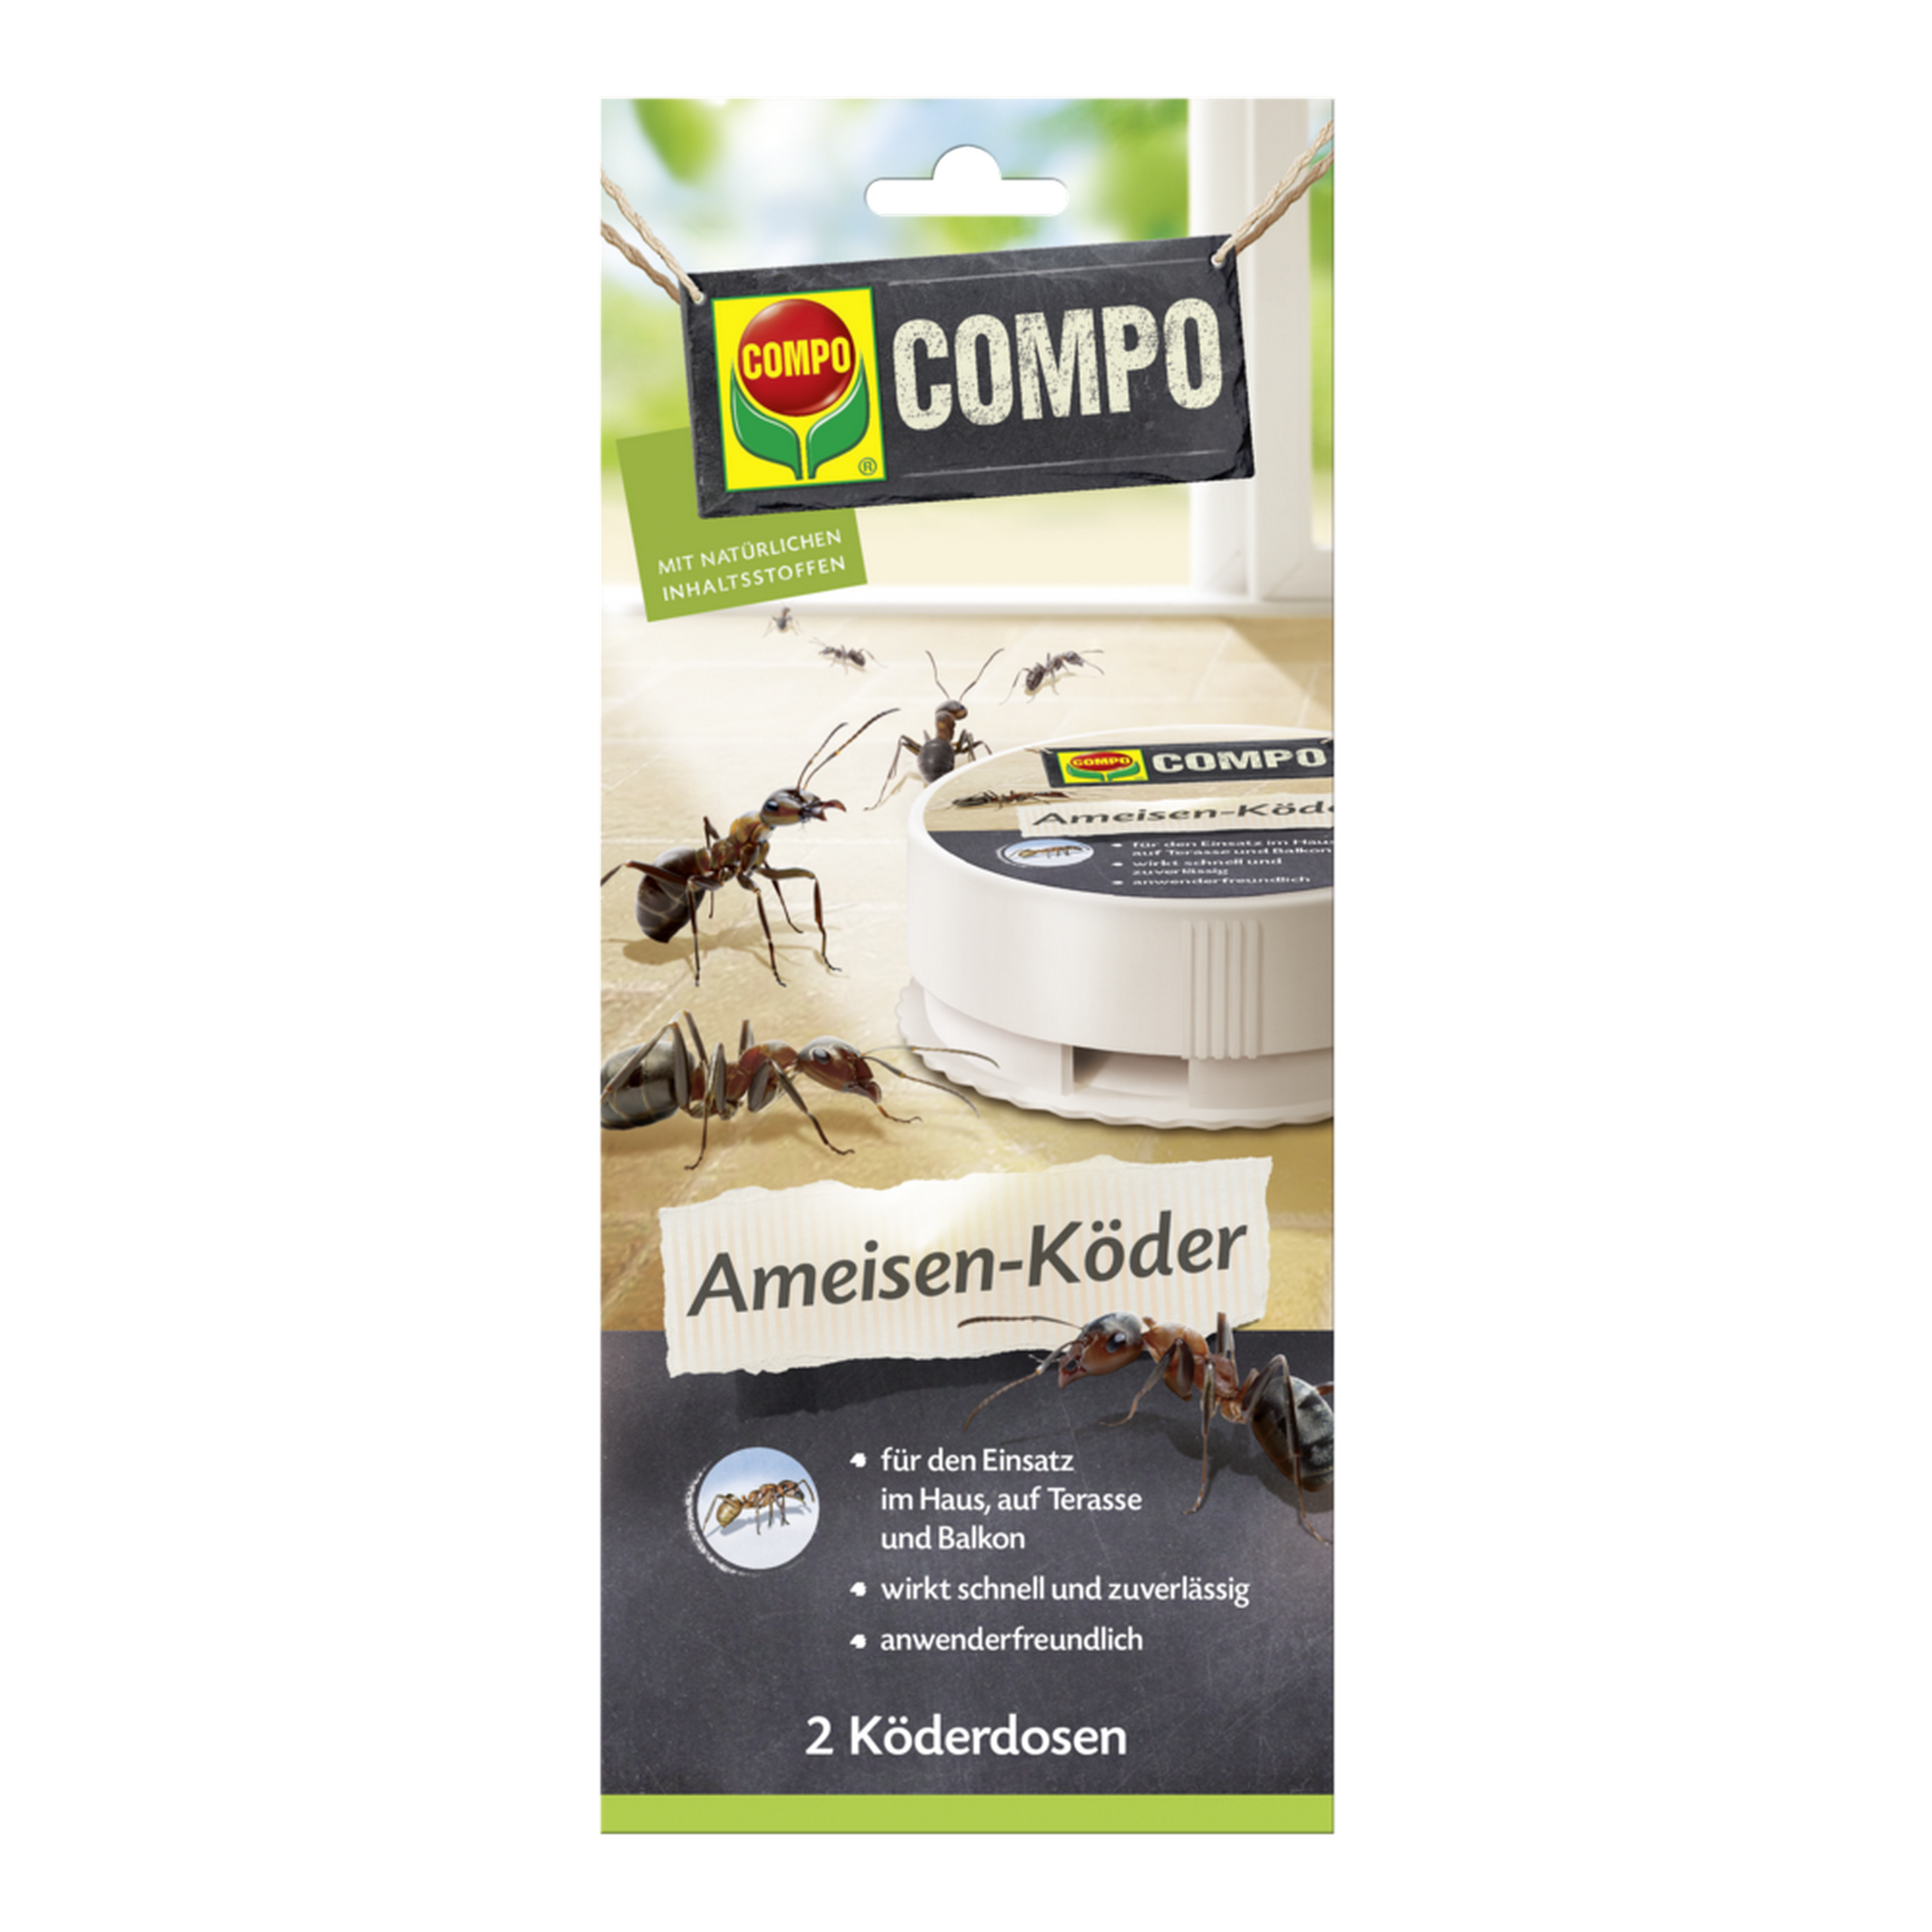 Ameisen-Köder N 2 Dosen + product picture